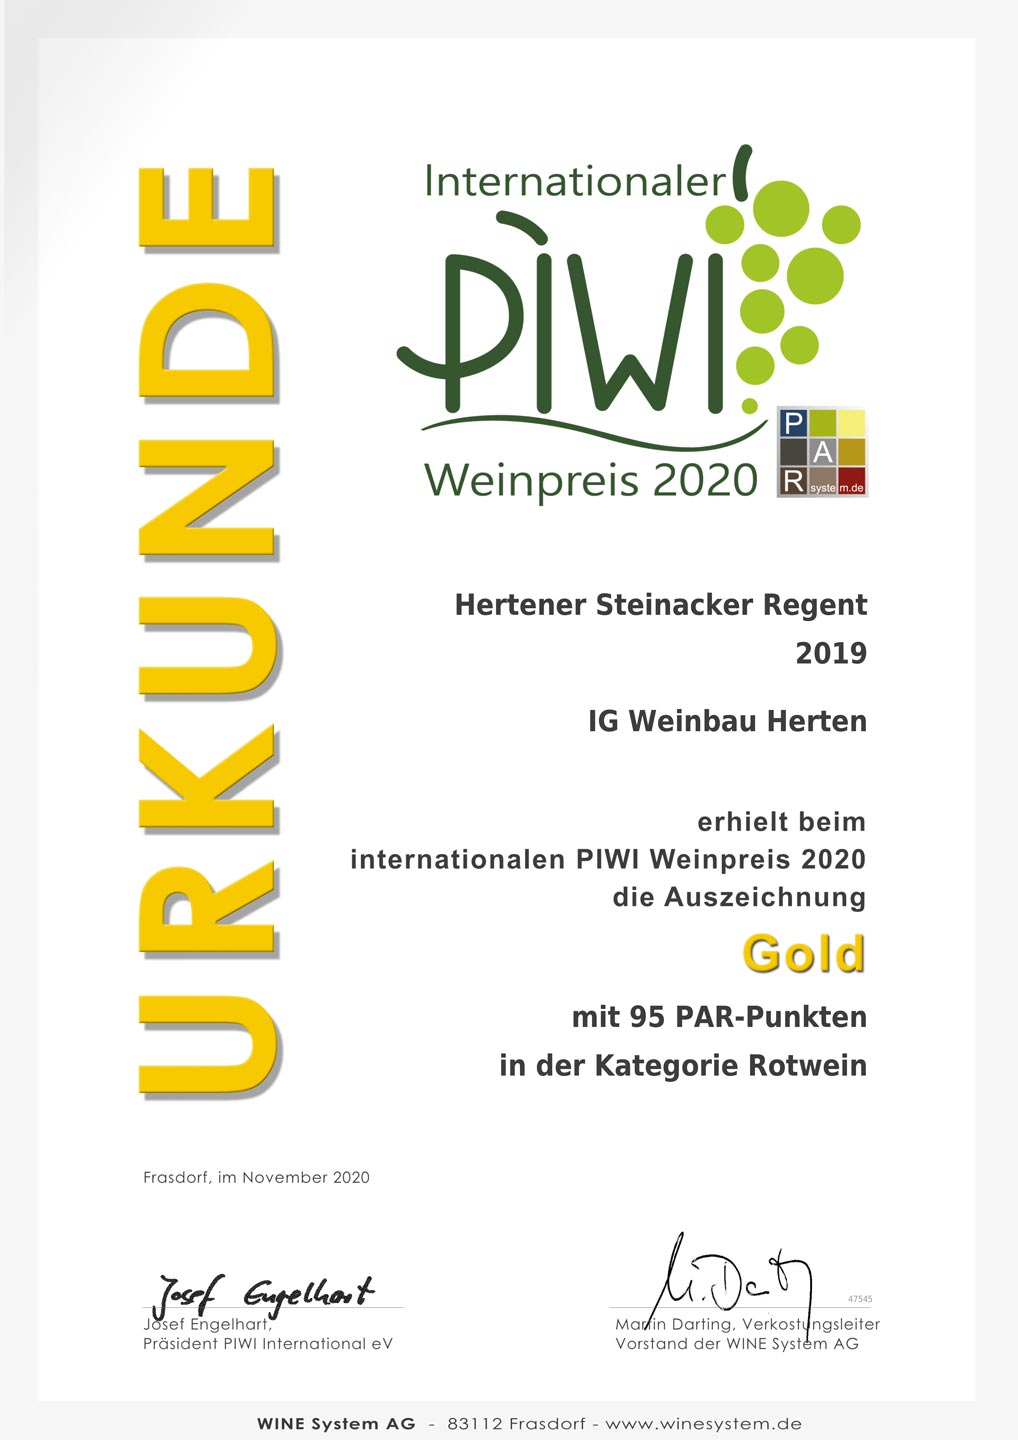 Gold beim internationalen PIWI Weinpreis 2020 für Hertener Steinacker Regent 2019